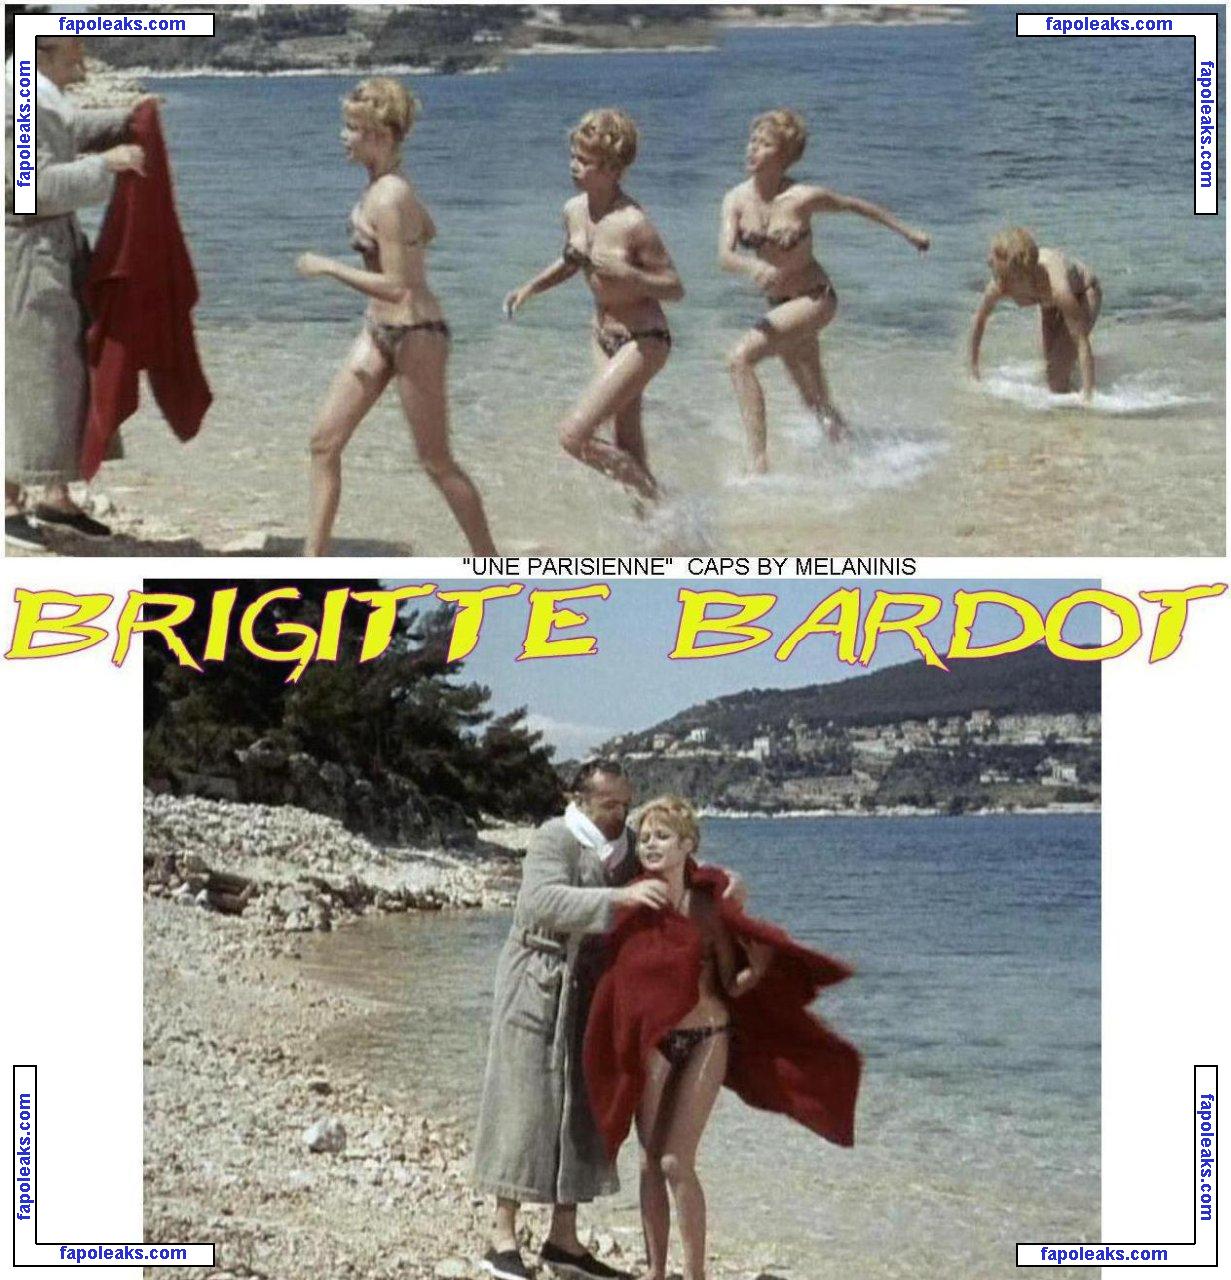 Brigitte Bardot / brigittebardotbb nude photo #0104 from OnlyFans